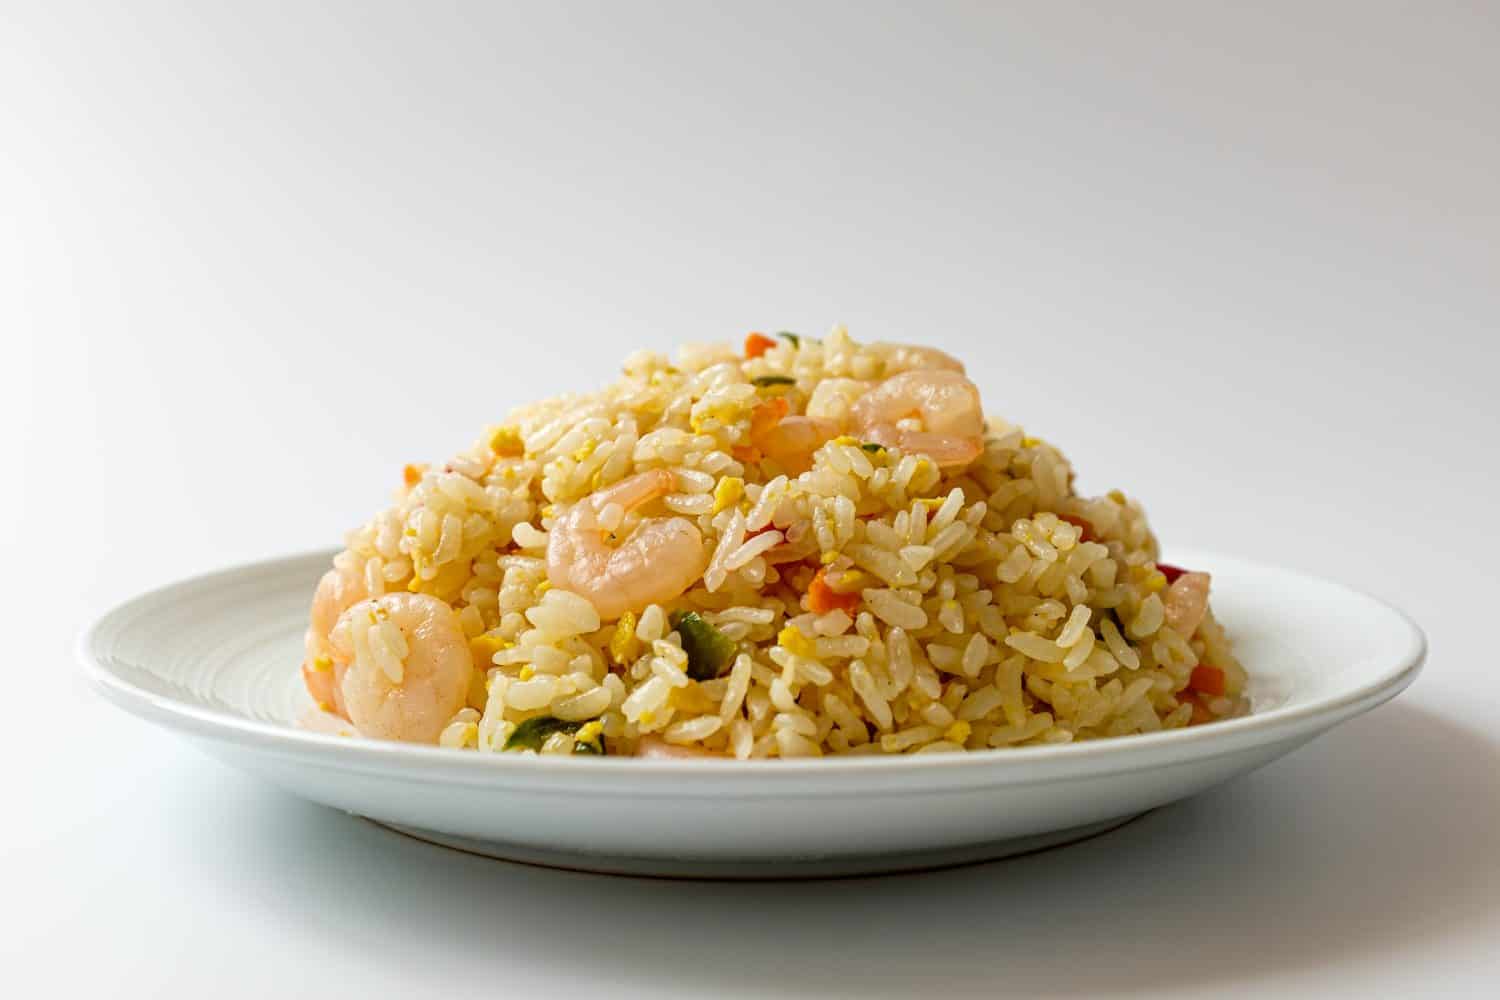 Shrimp fried rice on white background